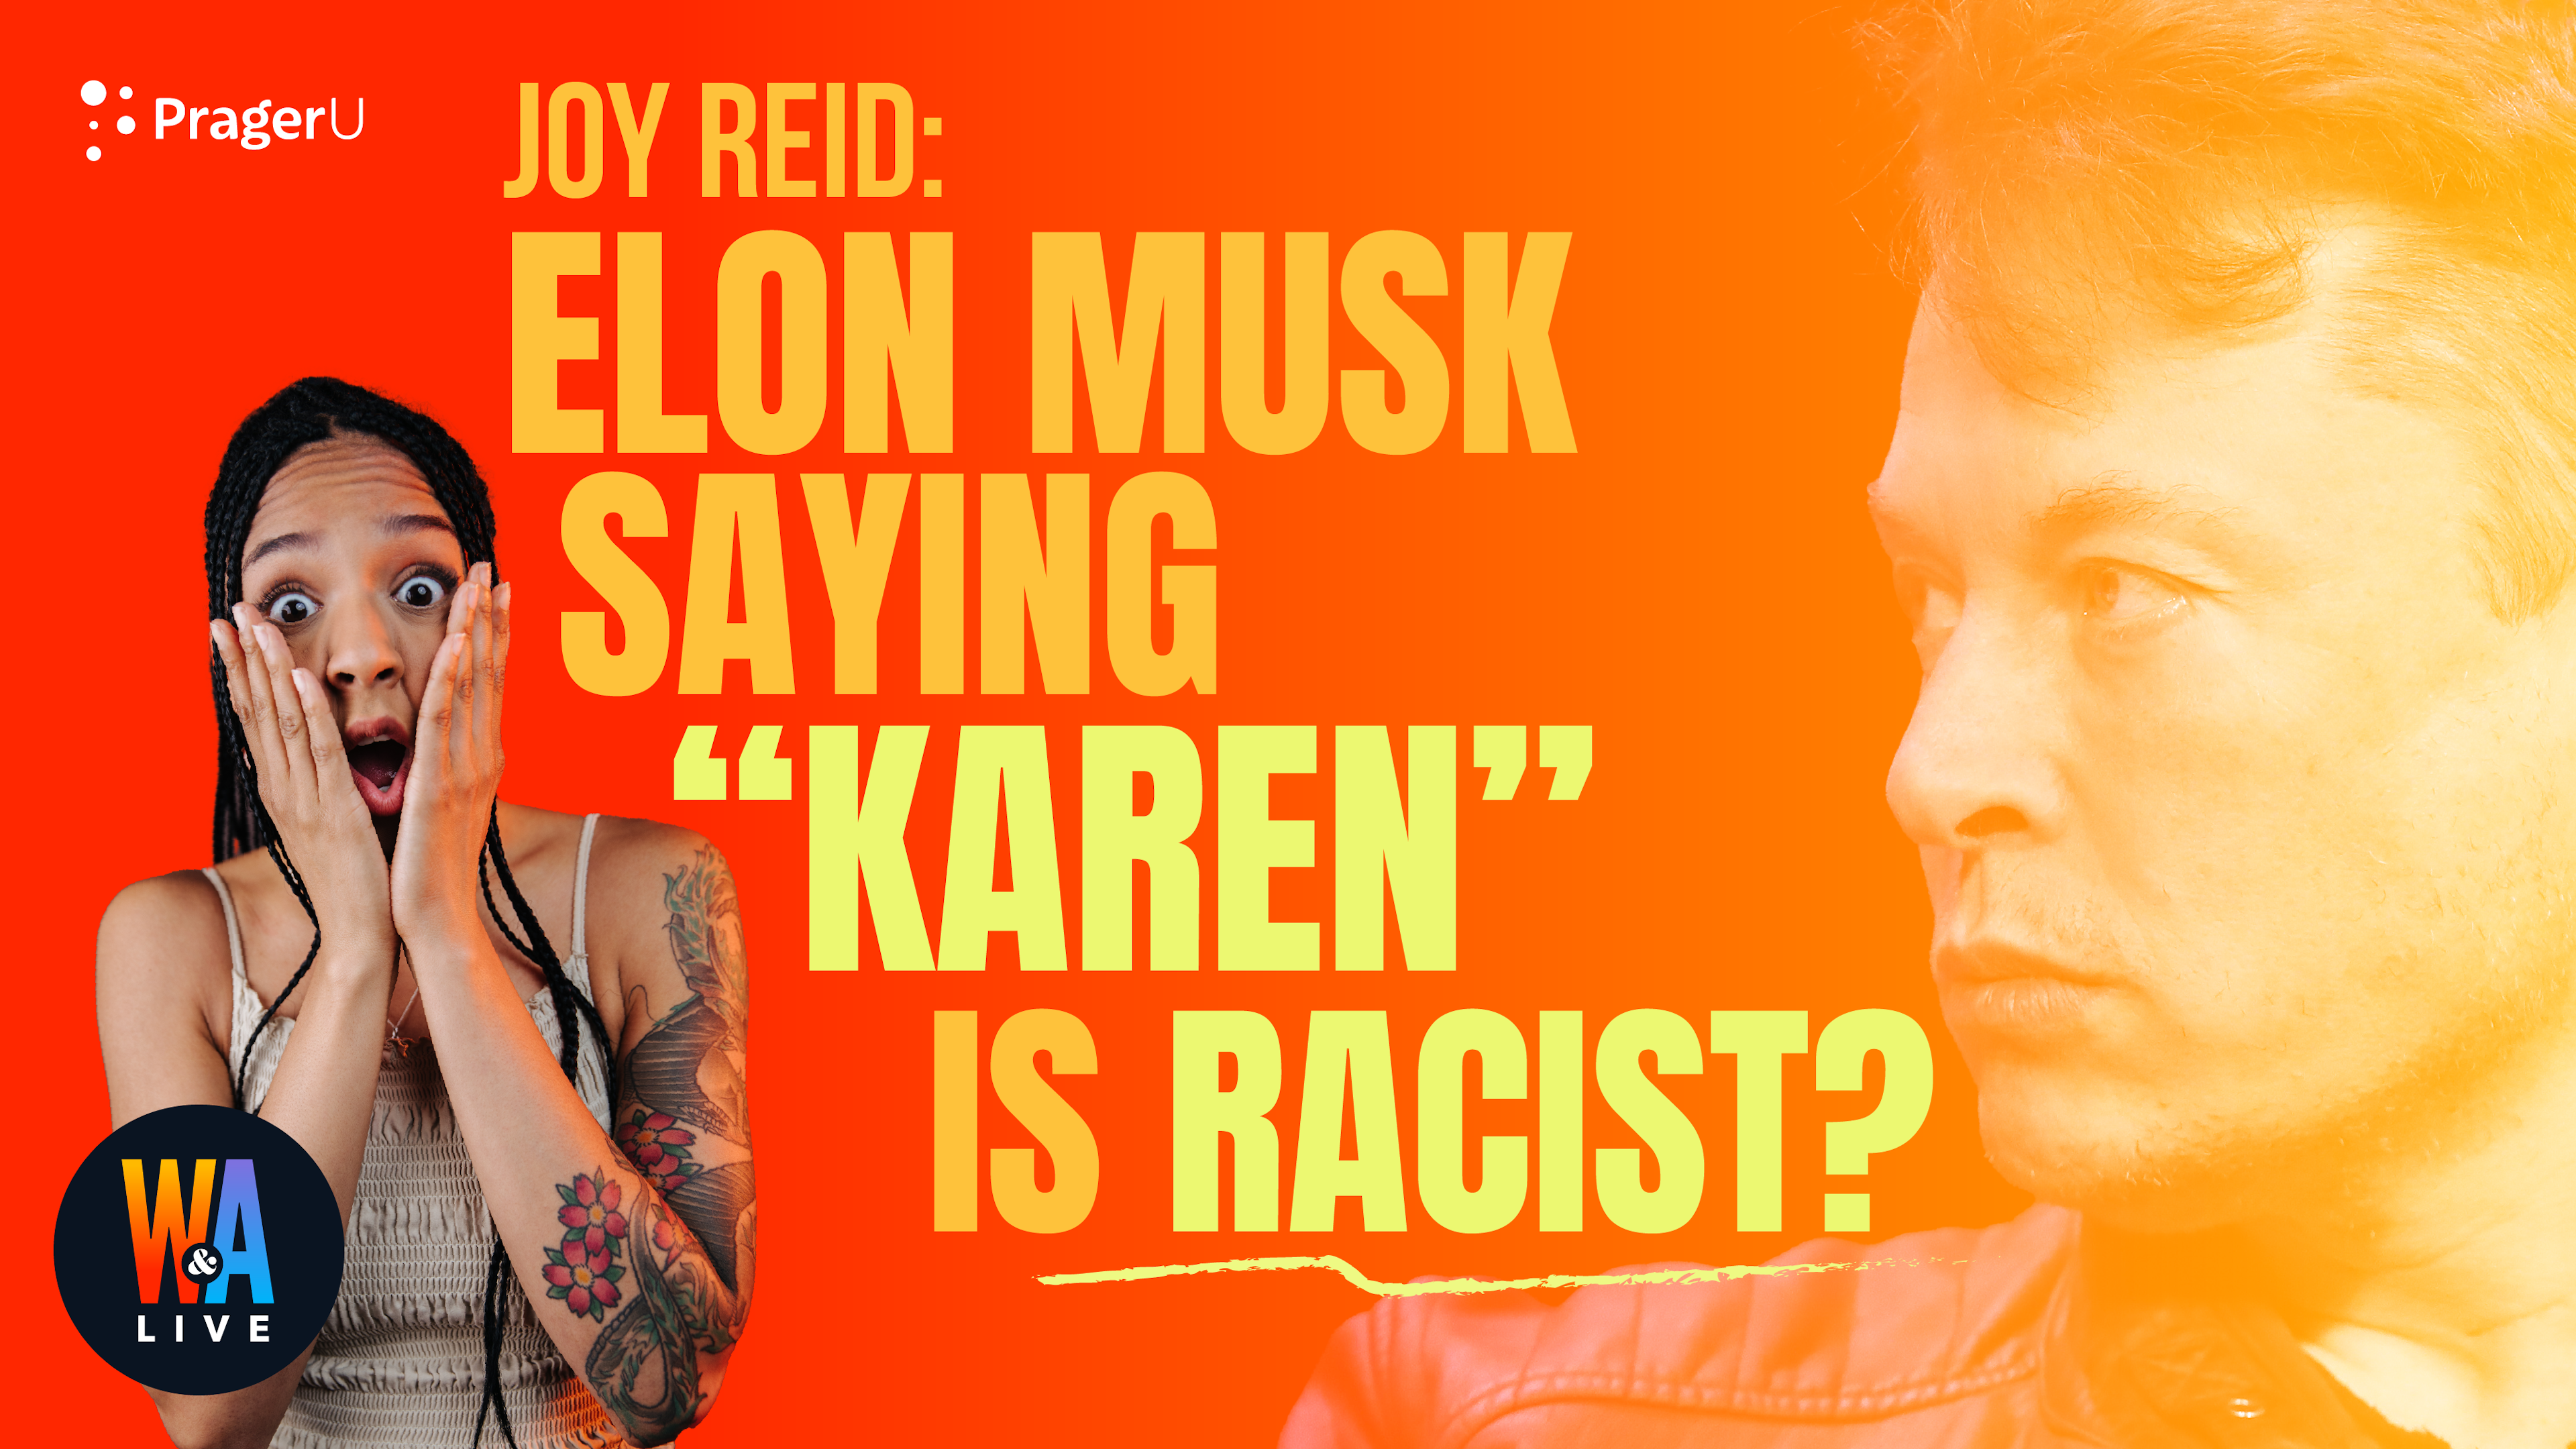 Joy Reid: Elon Musk Saying “Karen” Is Racist?: 12/16/2021